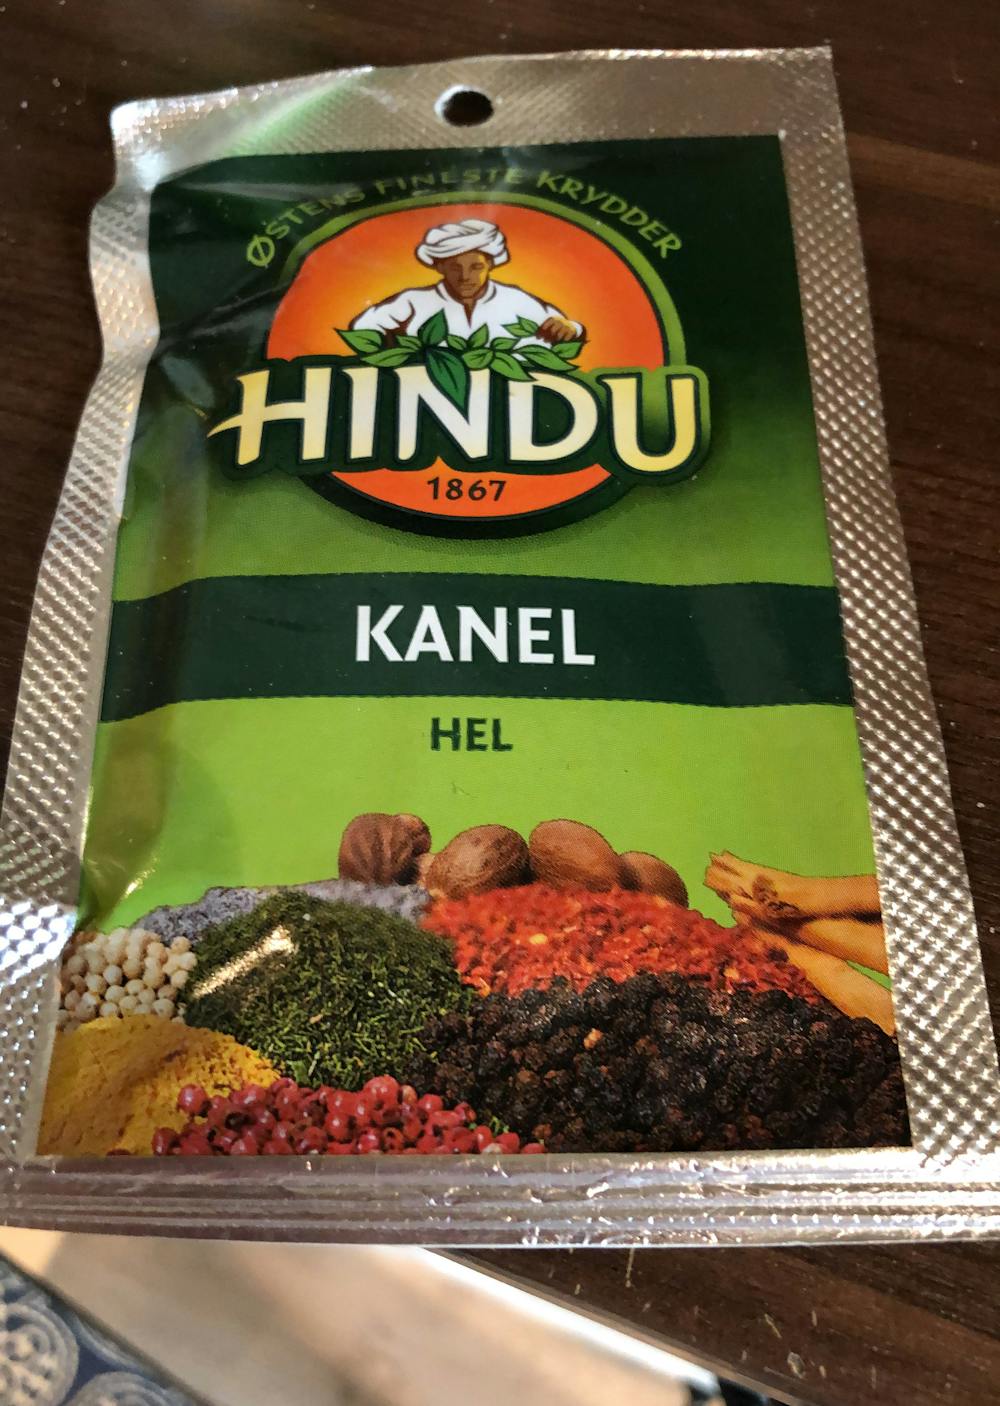 Kanel, hel, Hindu